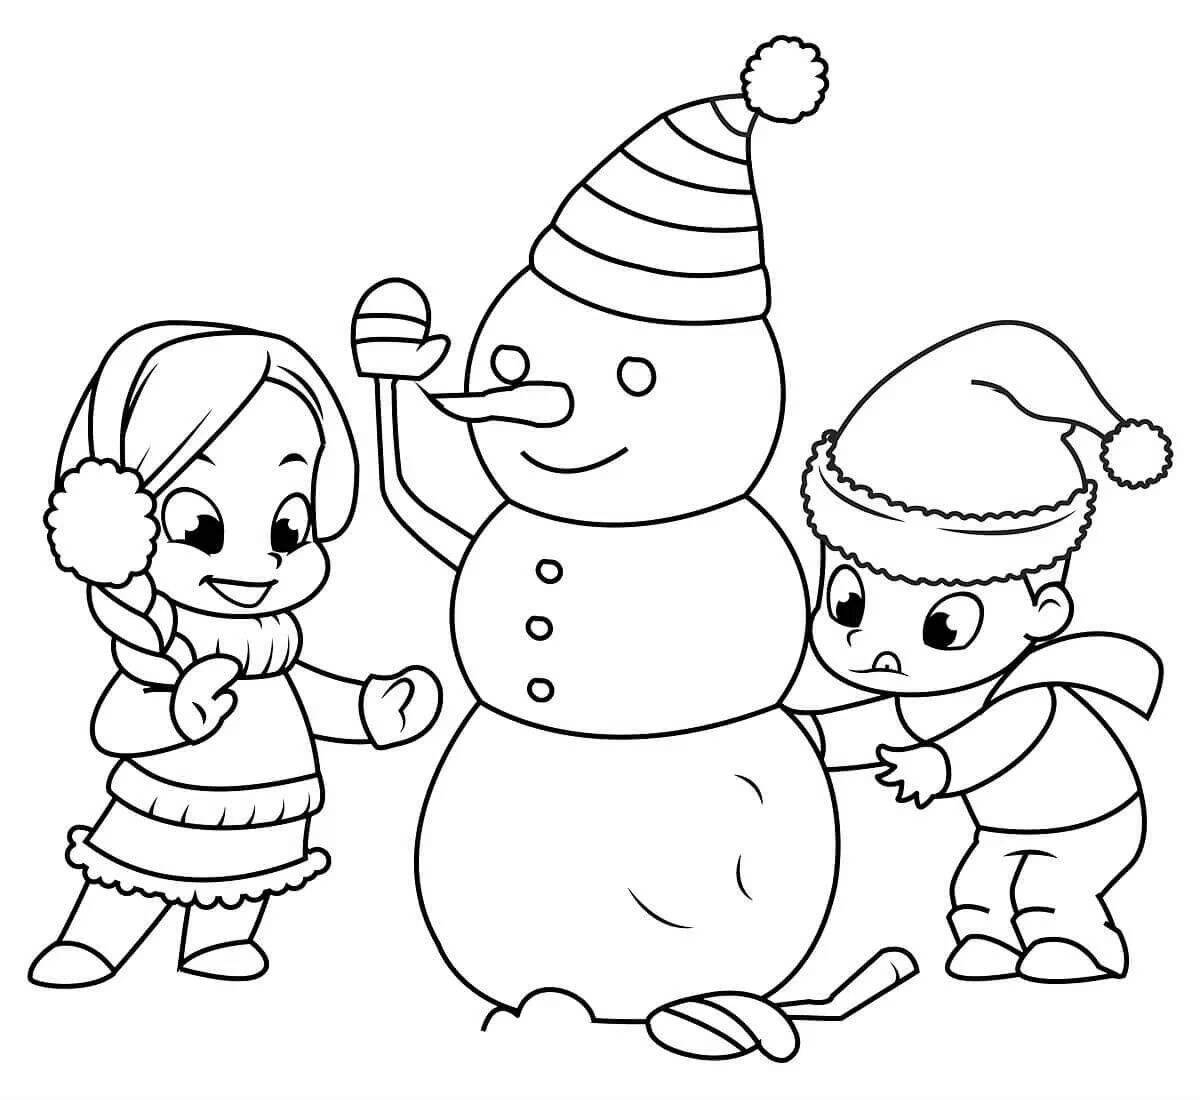 Великолепная раскраска снеговик для детей 3-4 лет